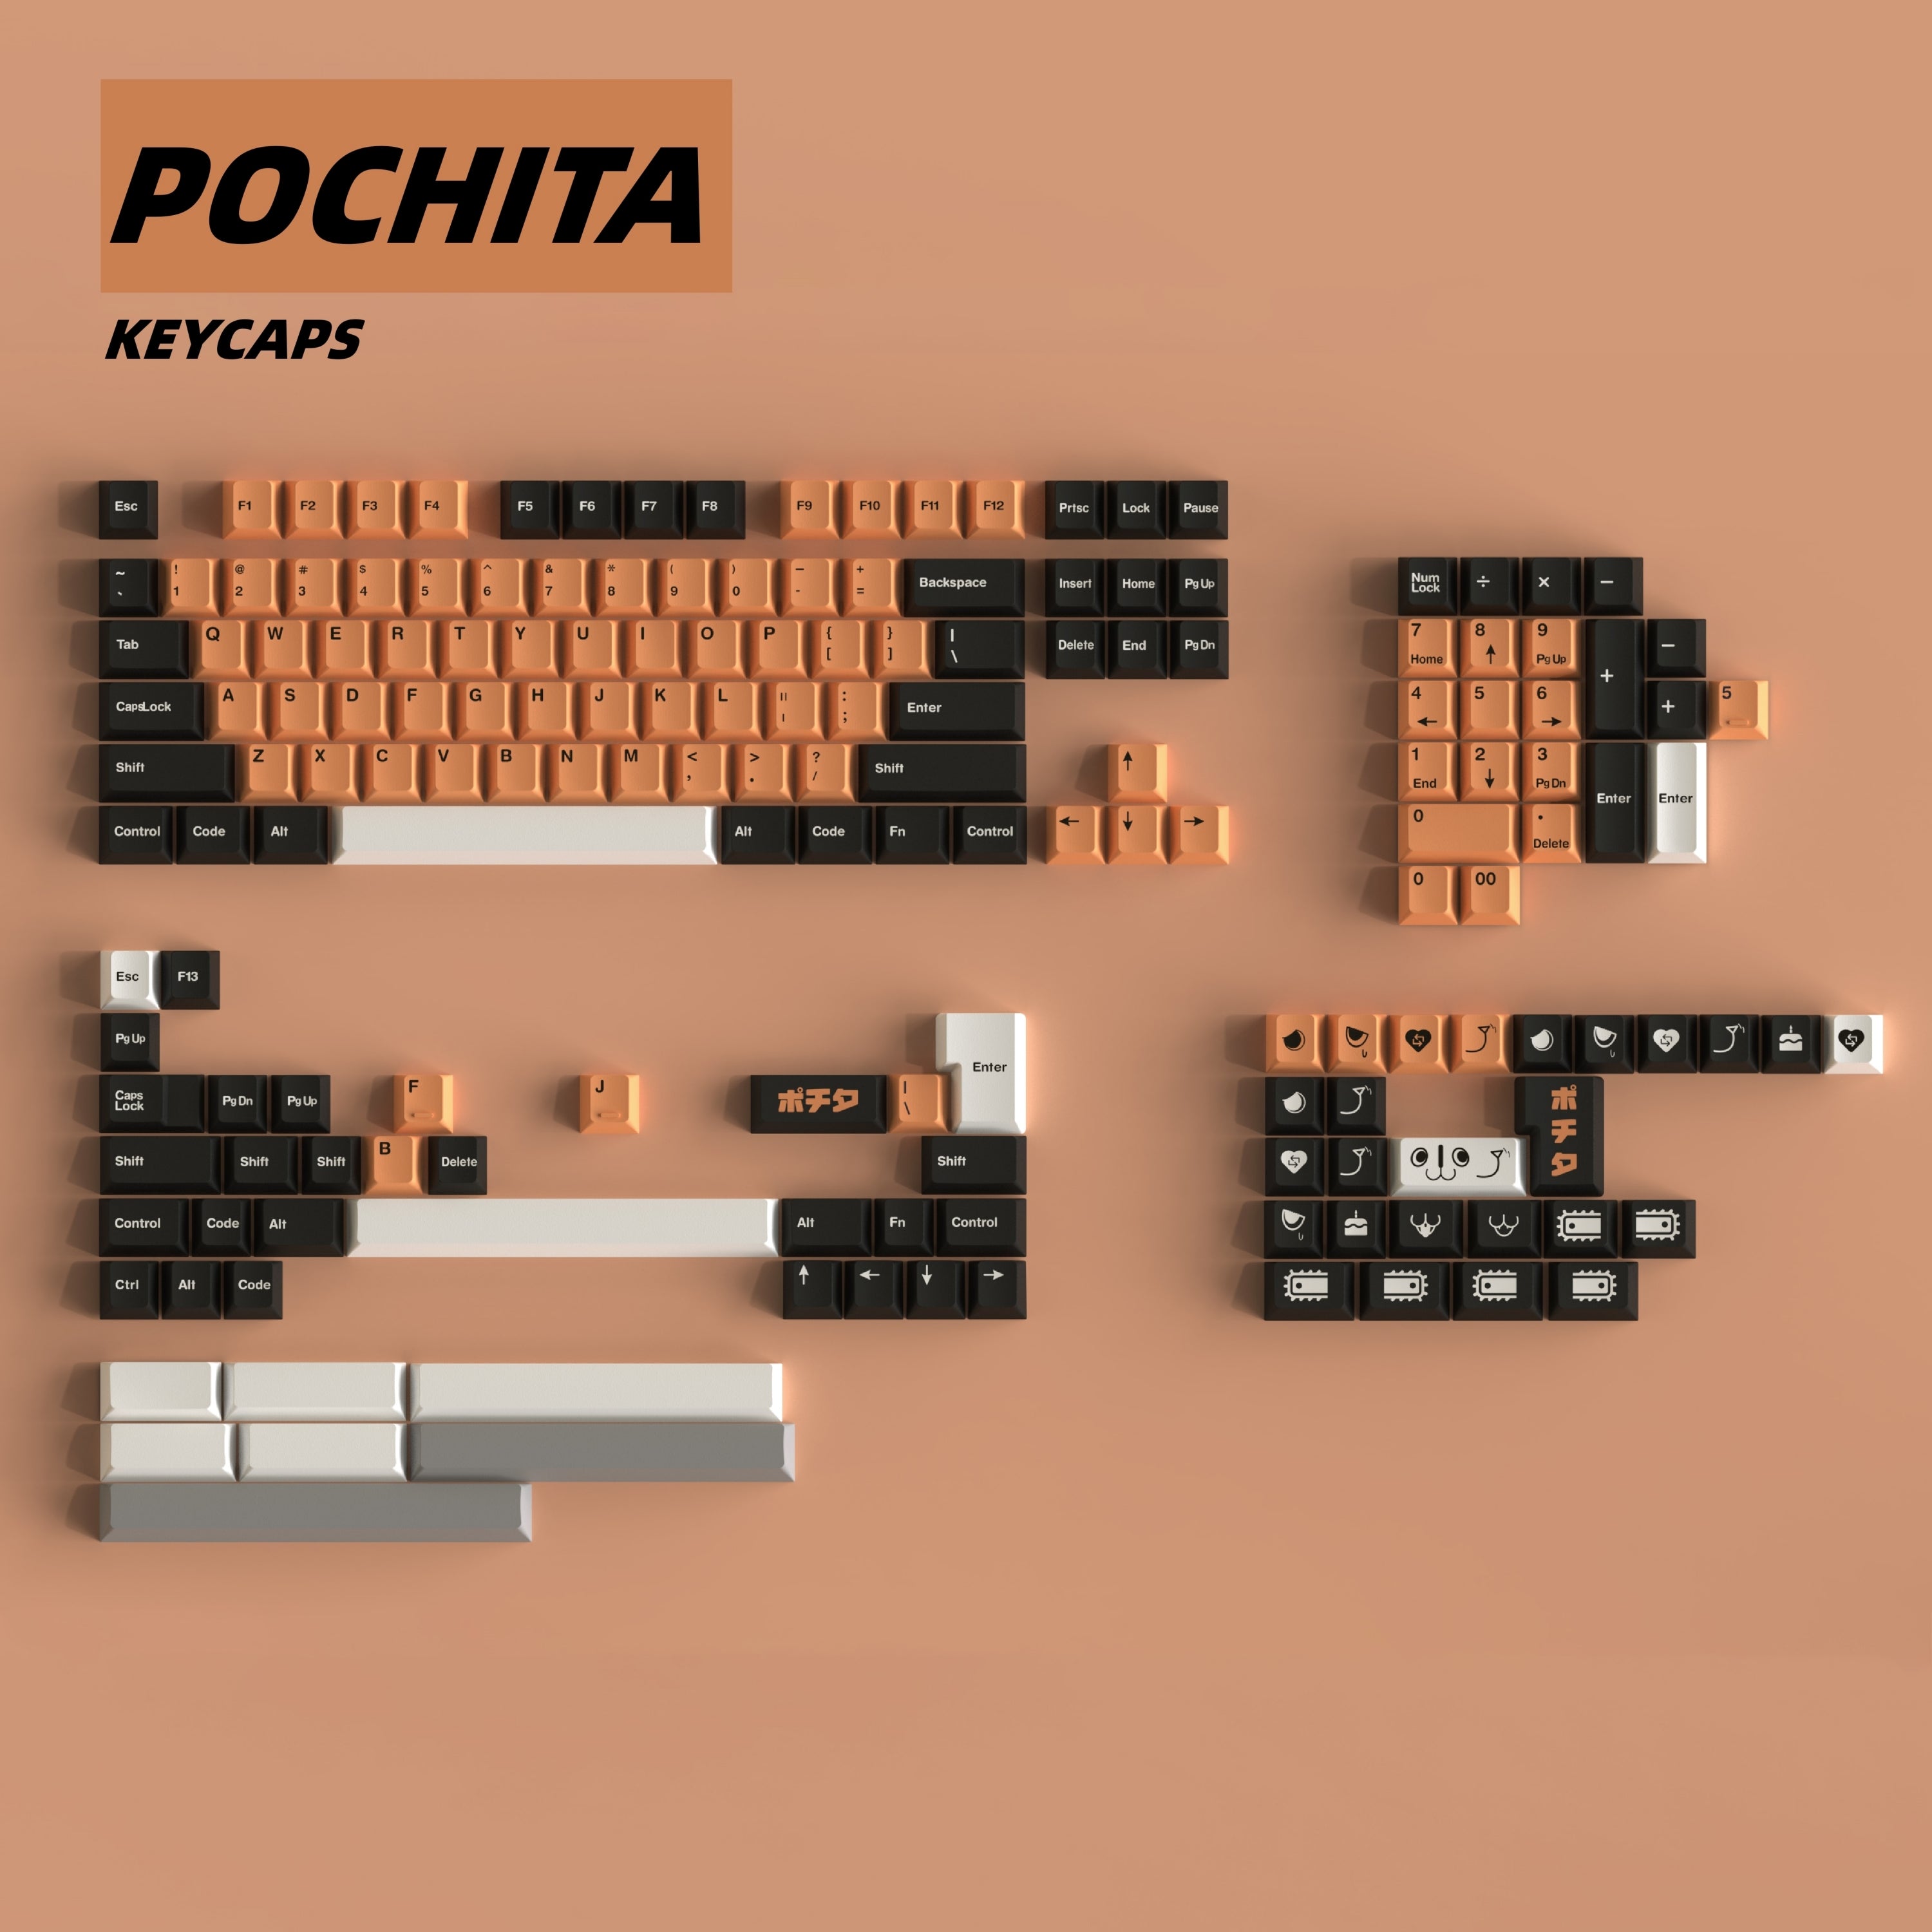 Pochita keycaps by TUT